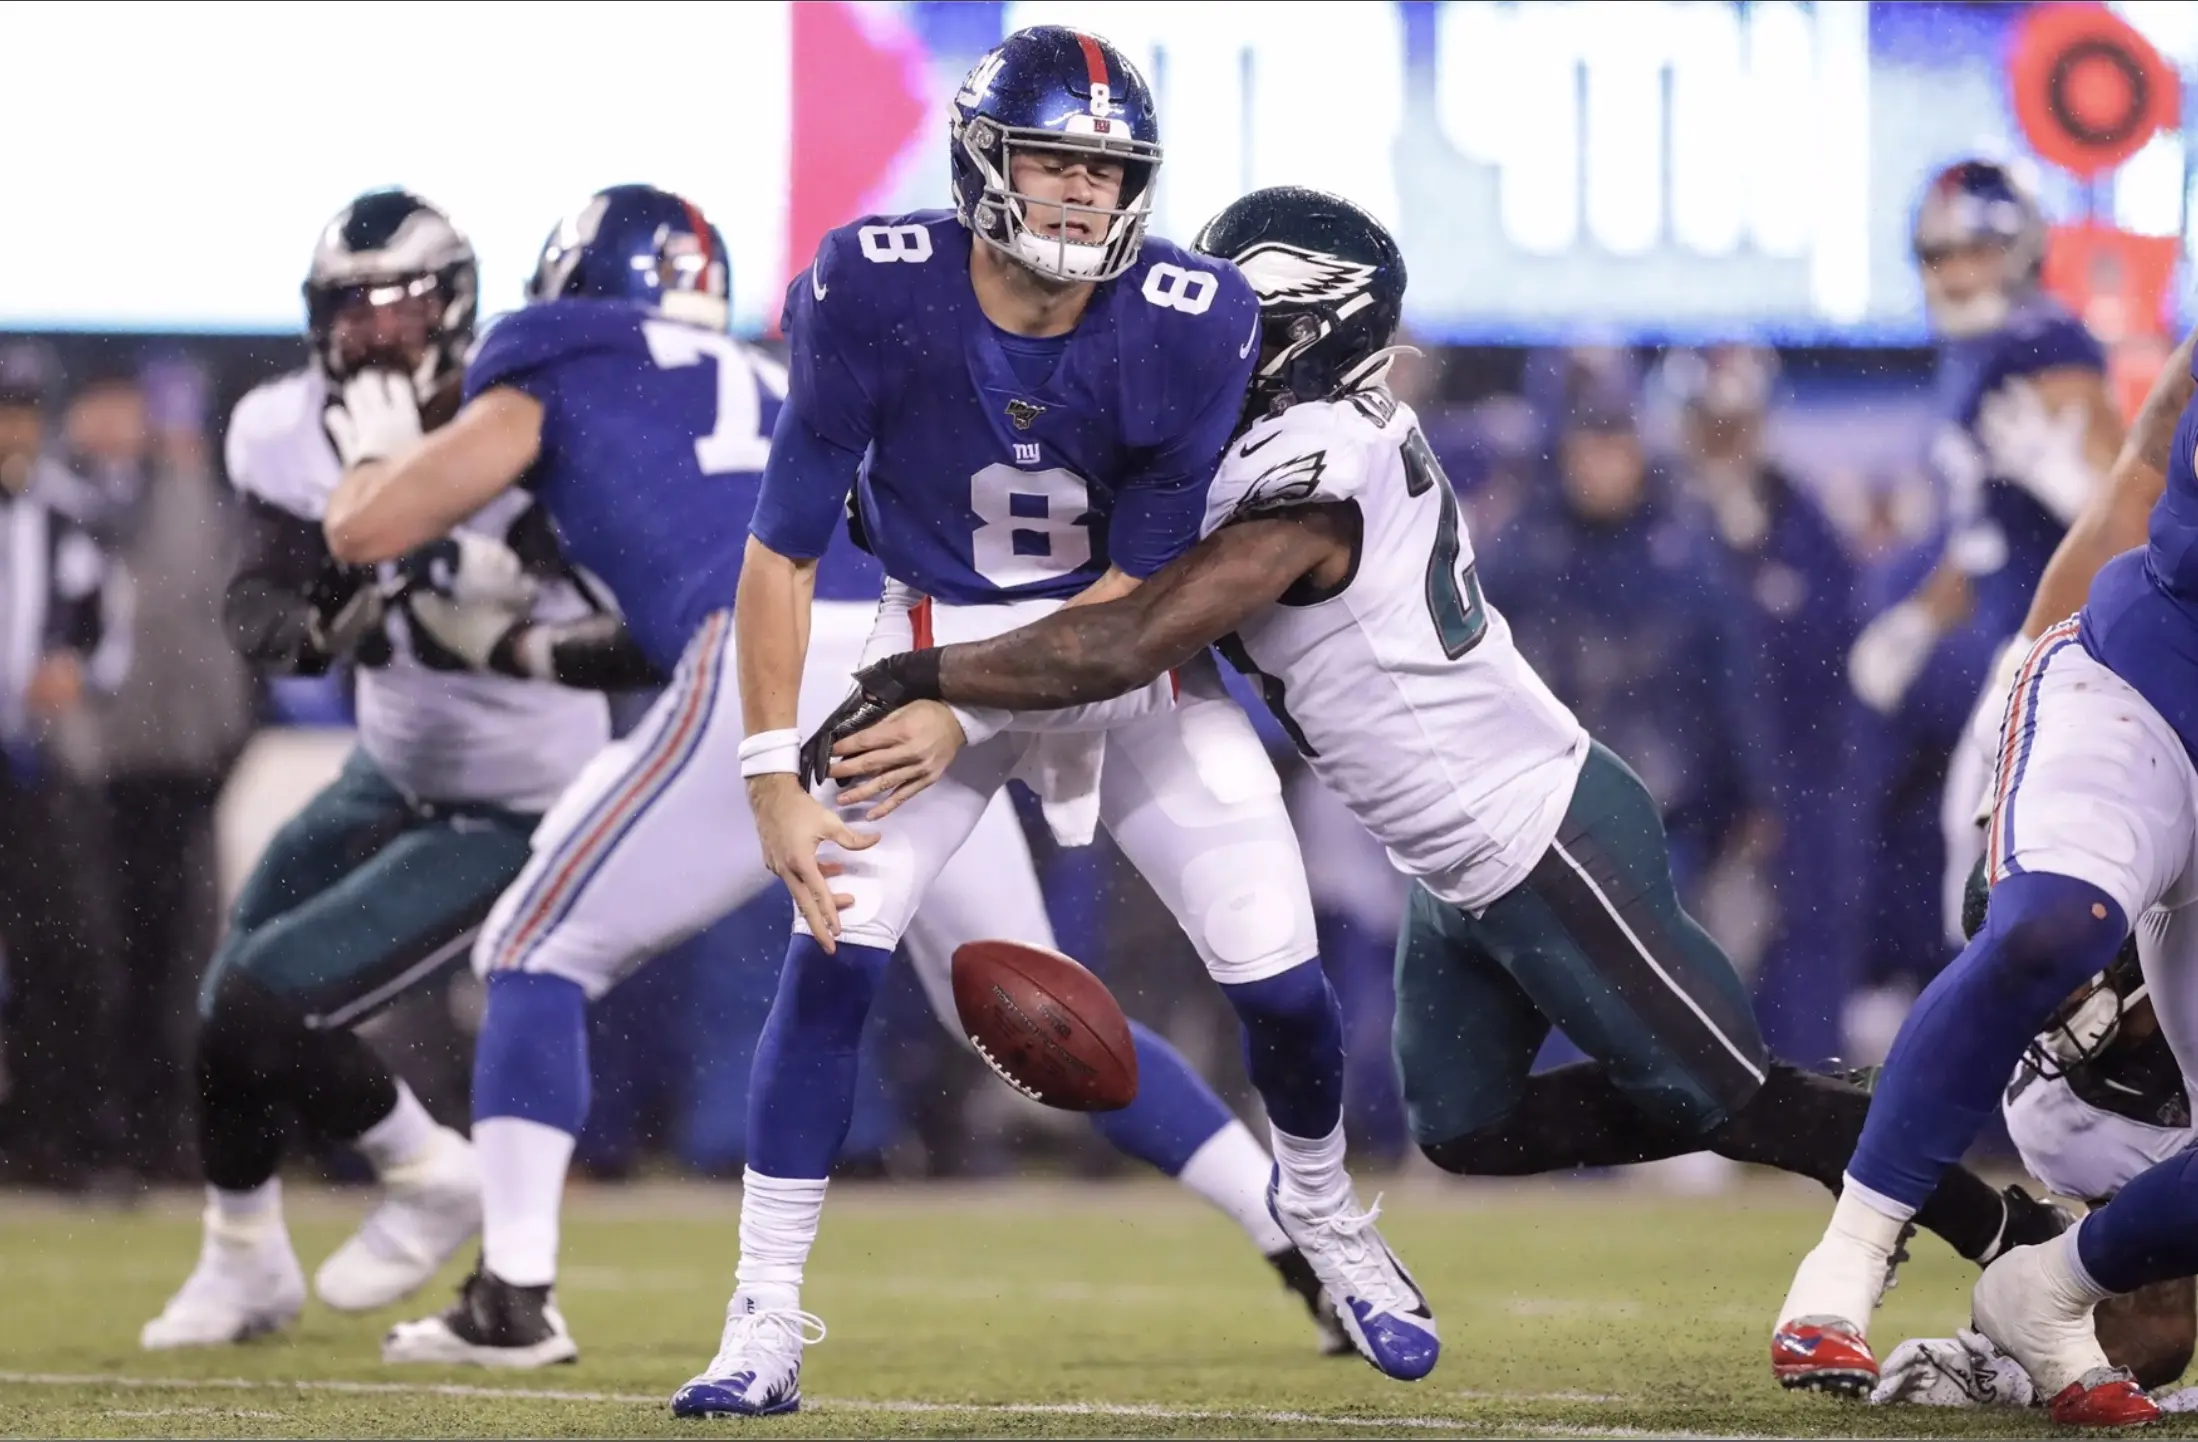 Eagles ganham sobre Giants, 34 a 17, na Semana 17 da NFL 2019